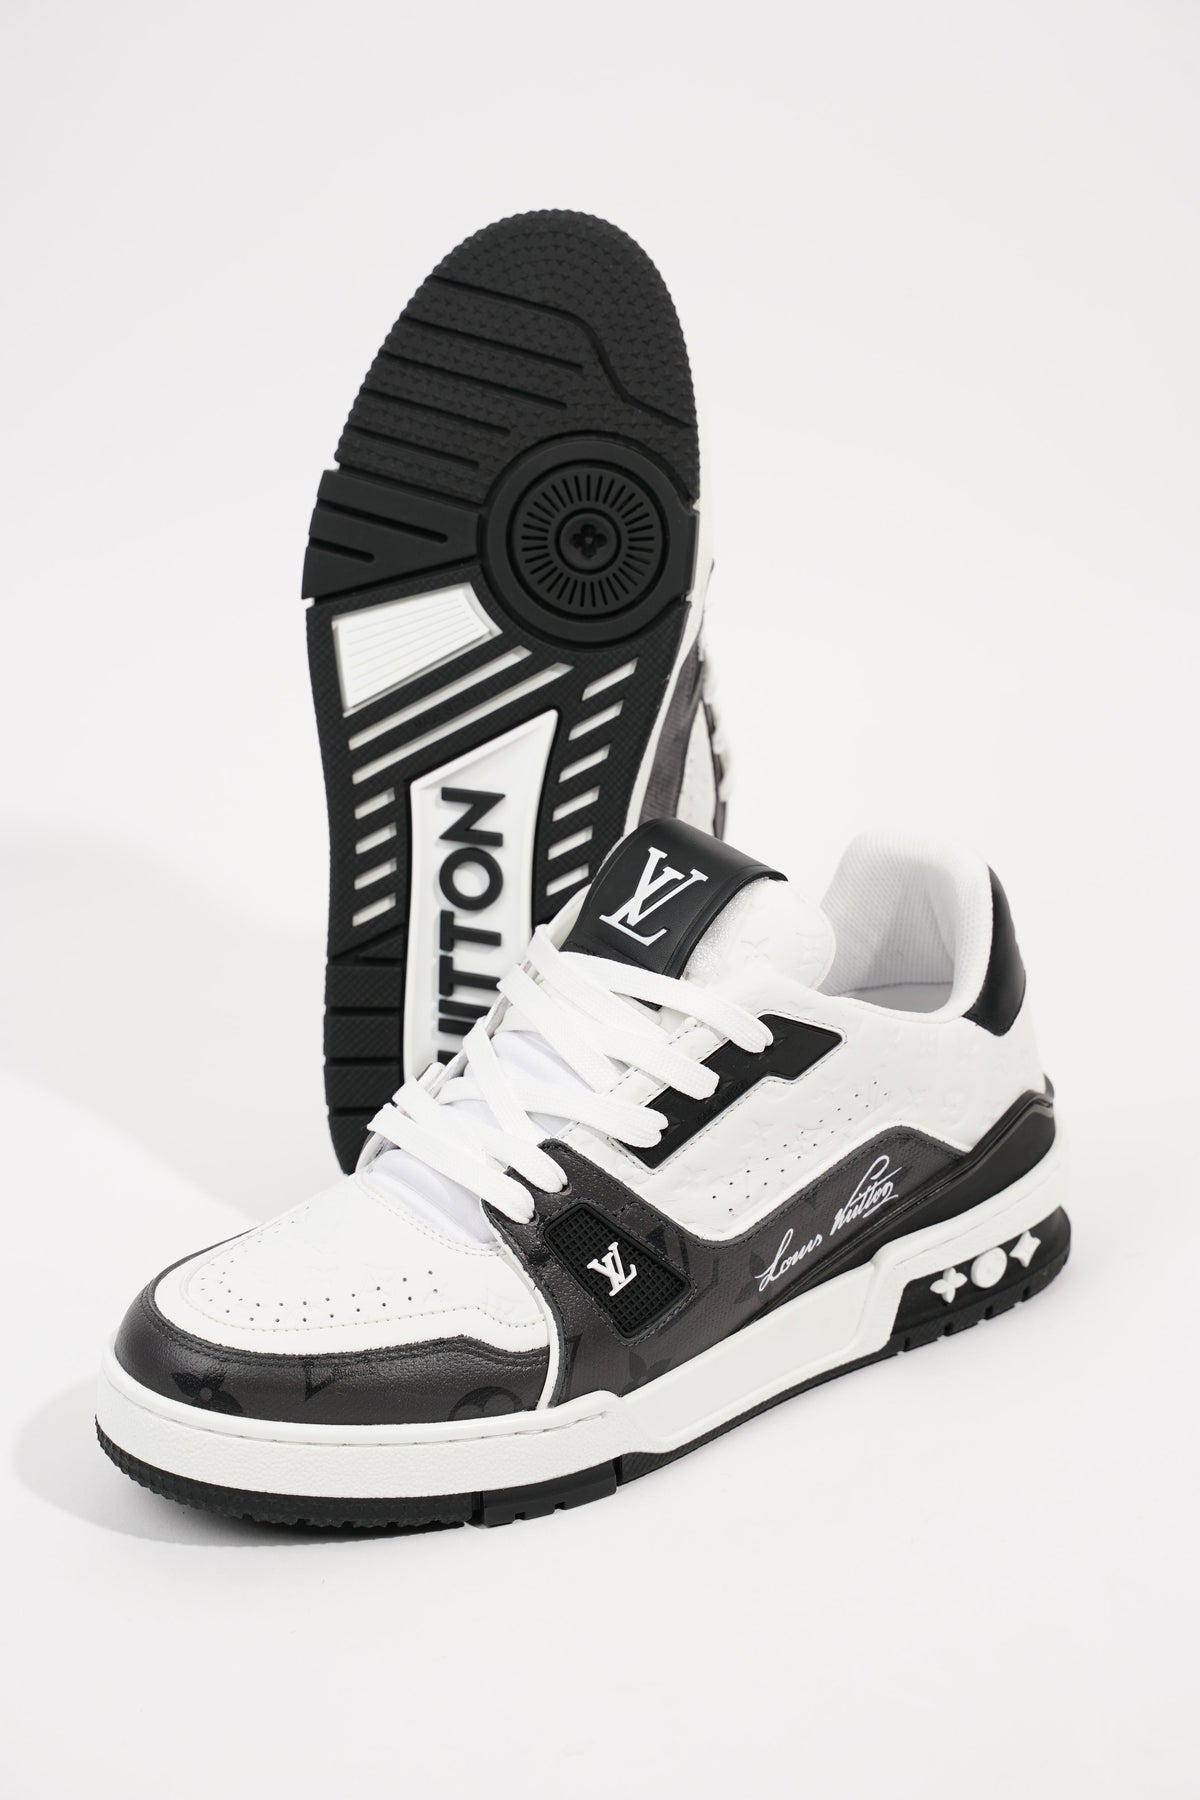 Louis Vuitton Womens #54 Sneaker Black White EU 37 / UK 4 – Luxe Collective